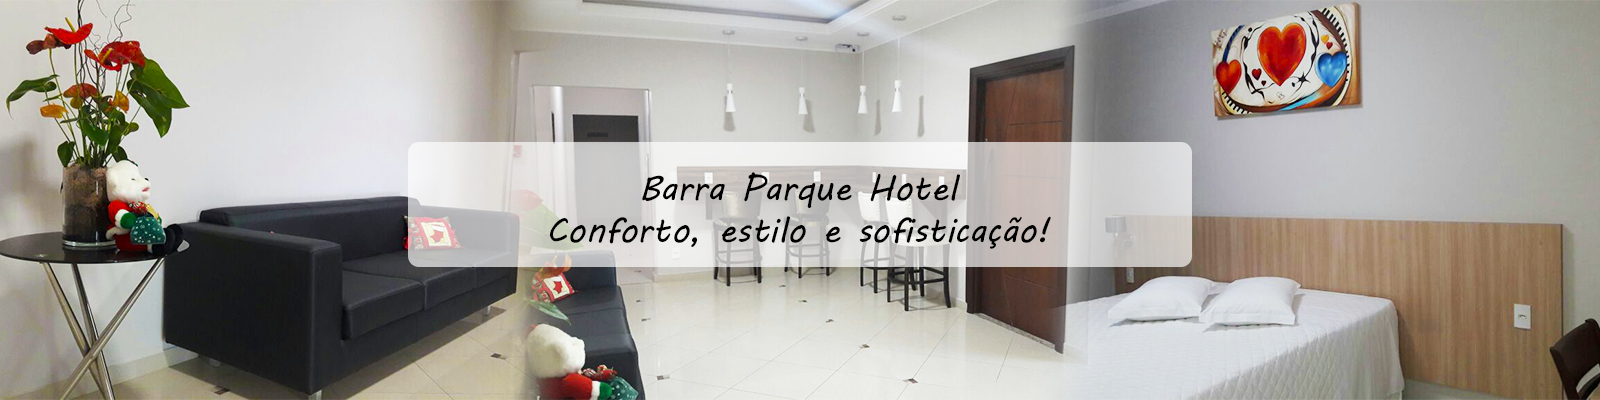 barra-parque-hotel-jaragua-do-sul-conforto-estilo-sofisticacao